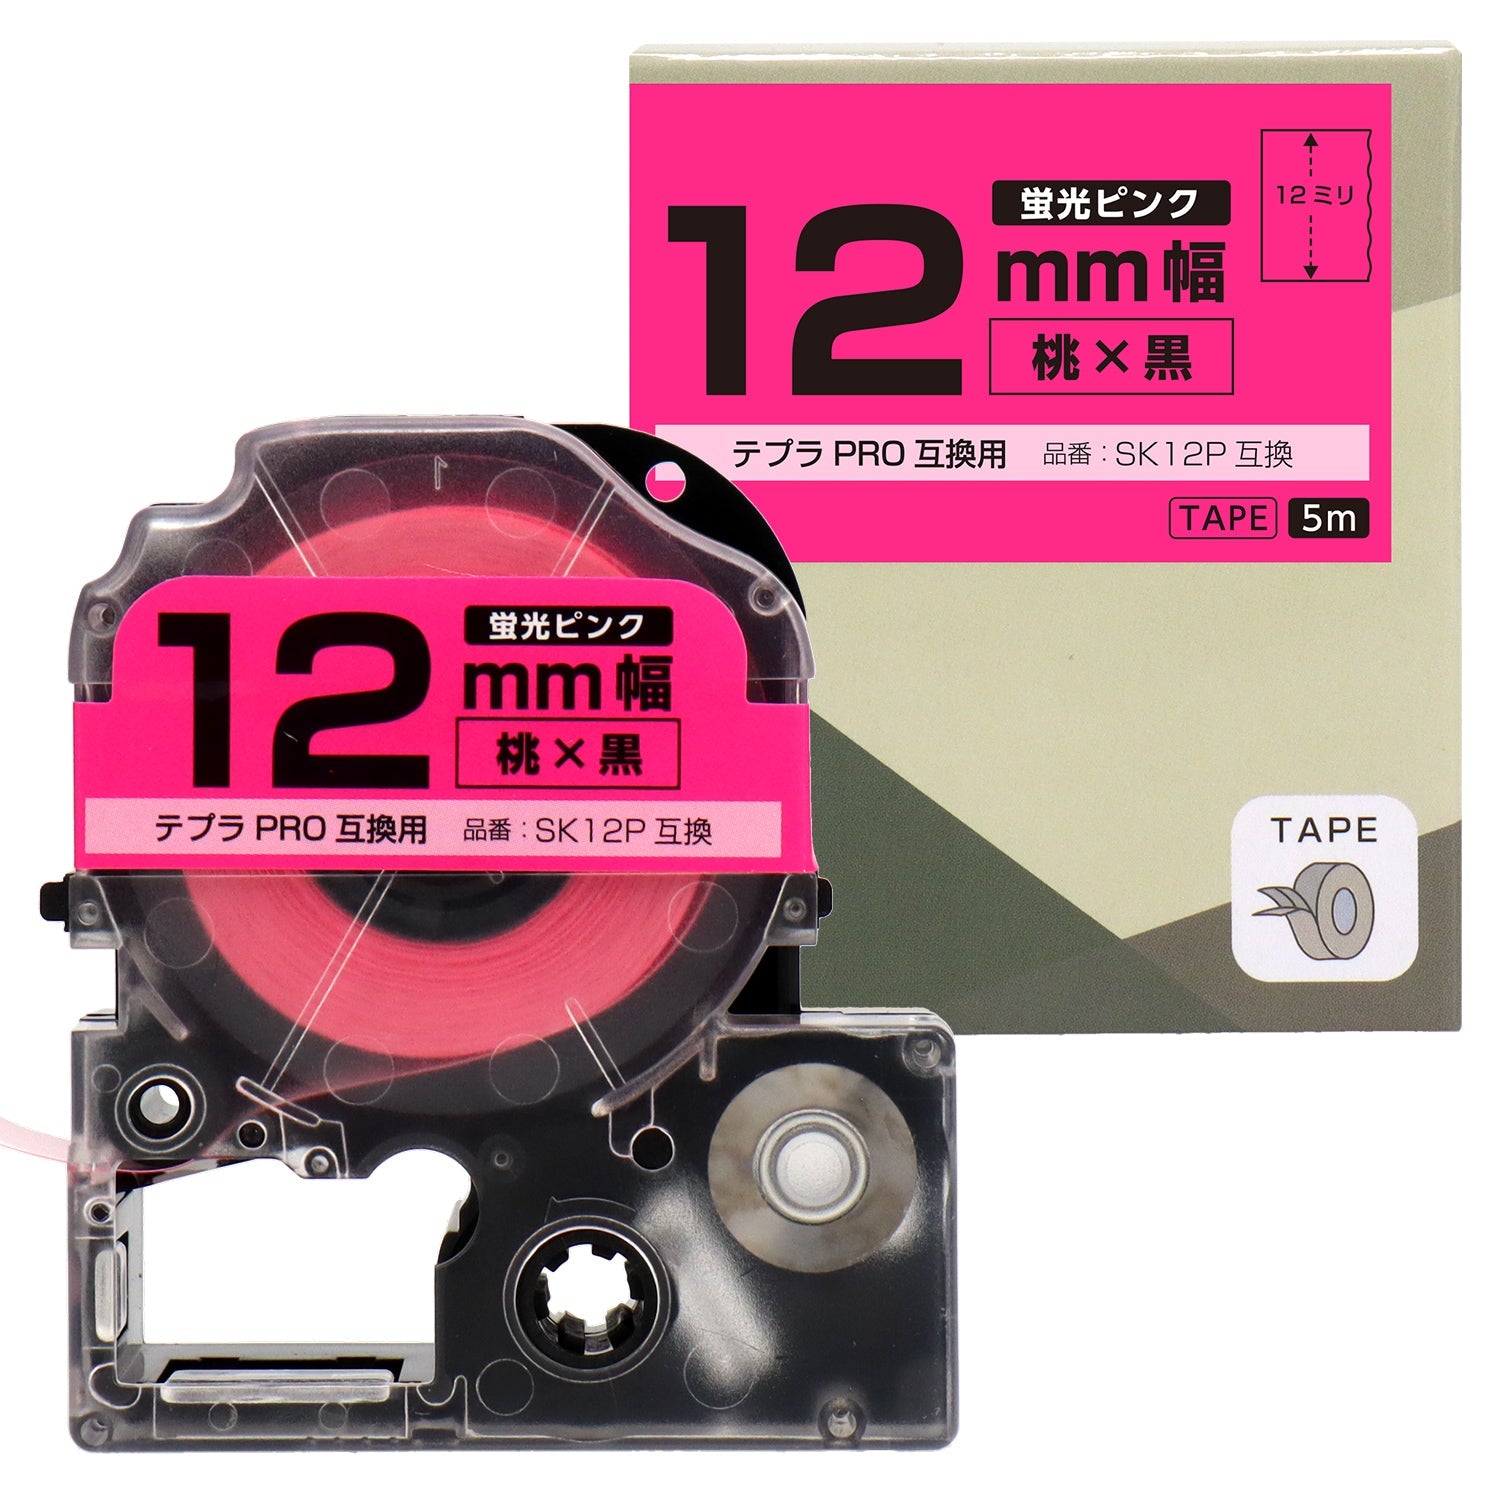 テプラPRO用互換テープカートリッジ 蛍光ピンク×黒文字 12mm